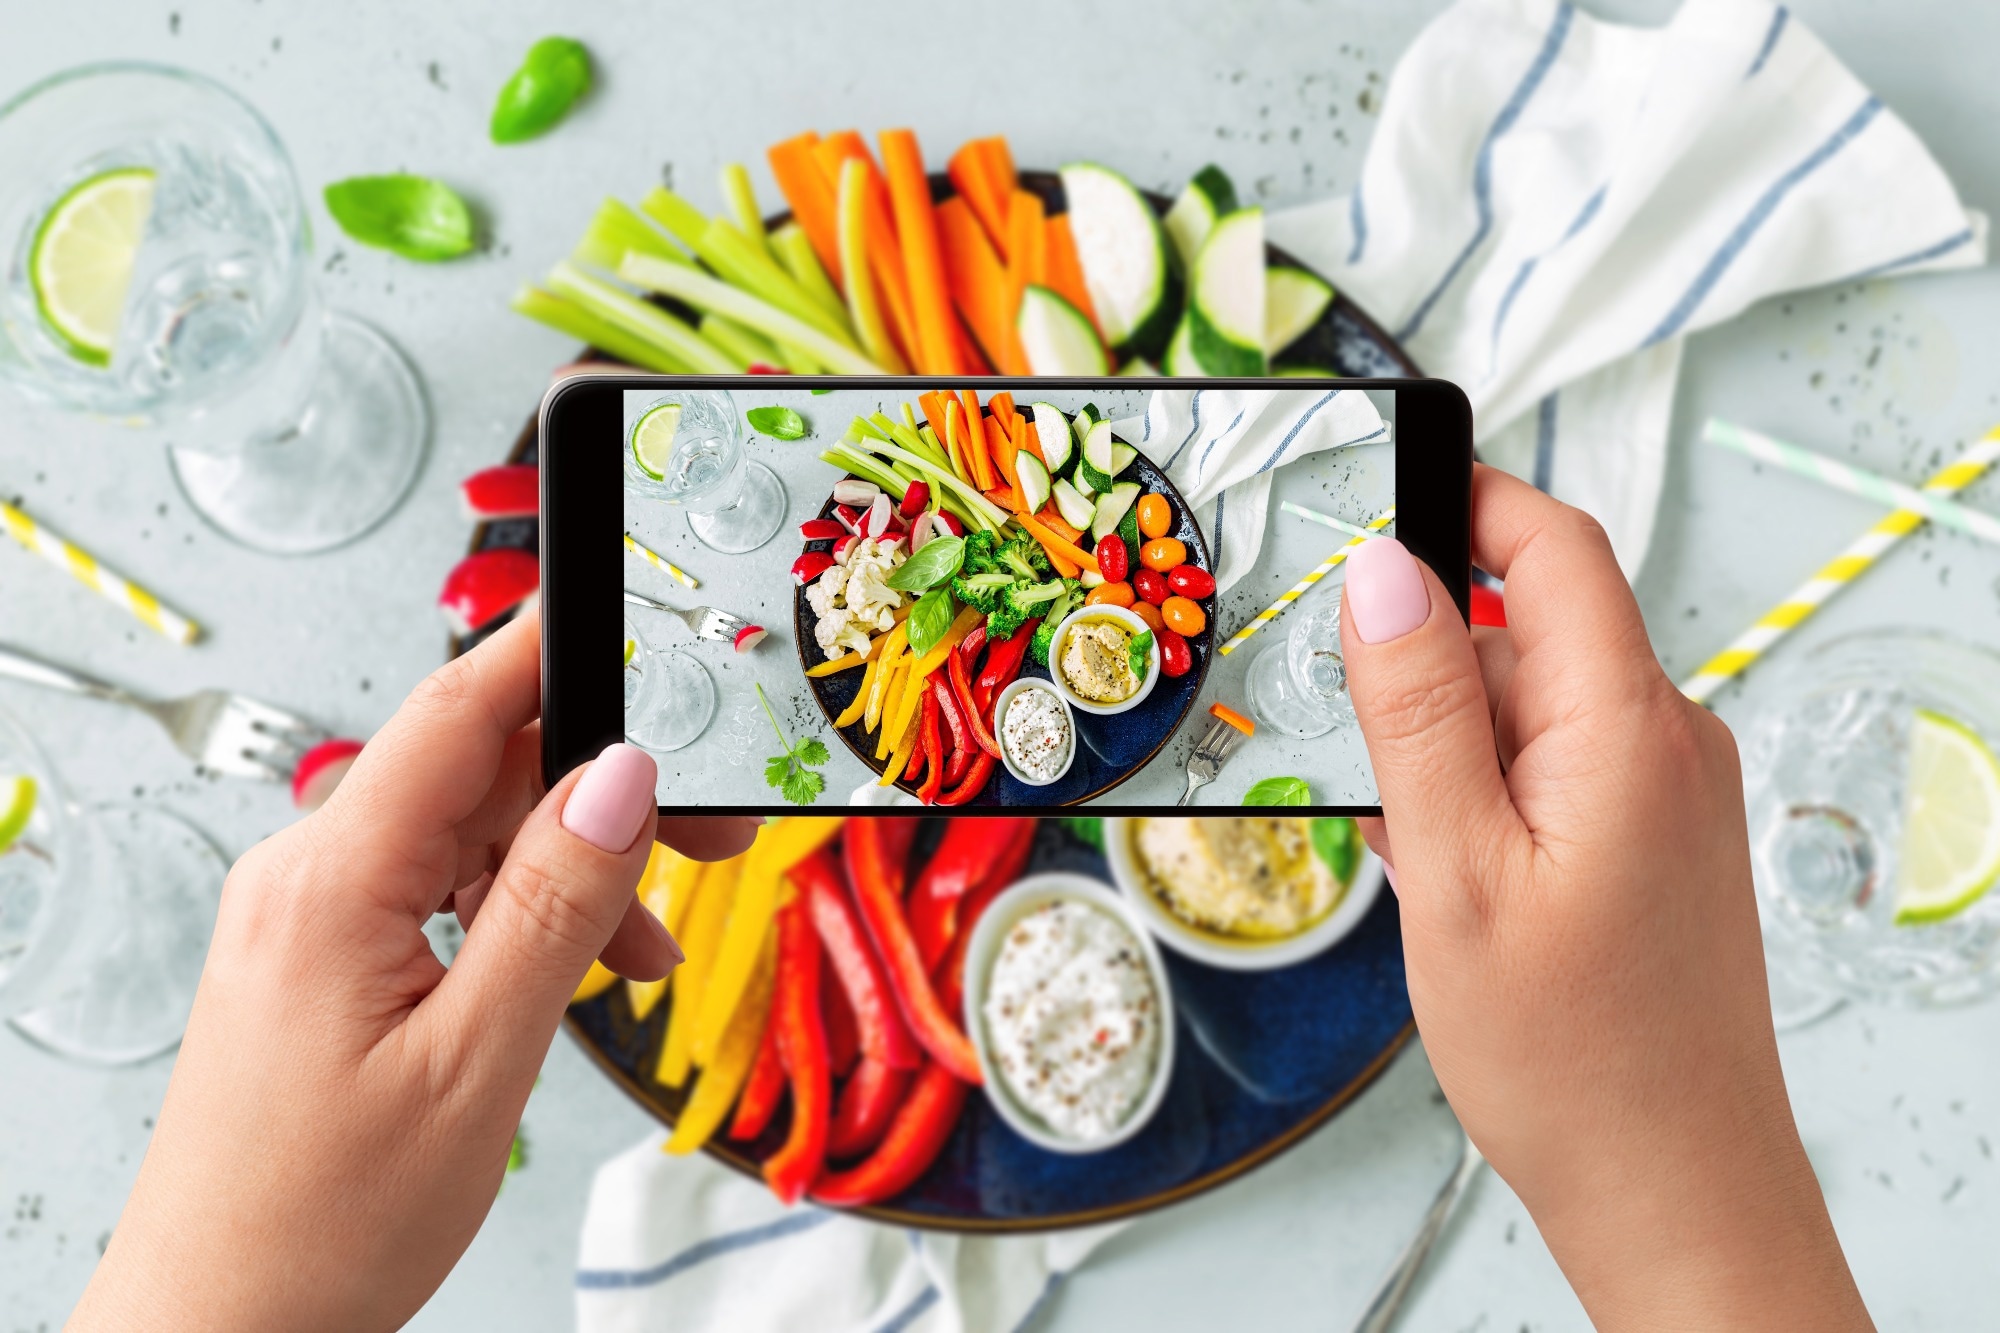 ¿Puedes notar la diferencia?  El estudio explora el atractivo de las fotografías de alimentos generadas por IA frente a las fotografías de alimentos reales.